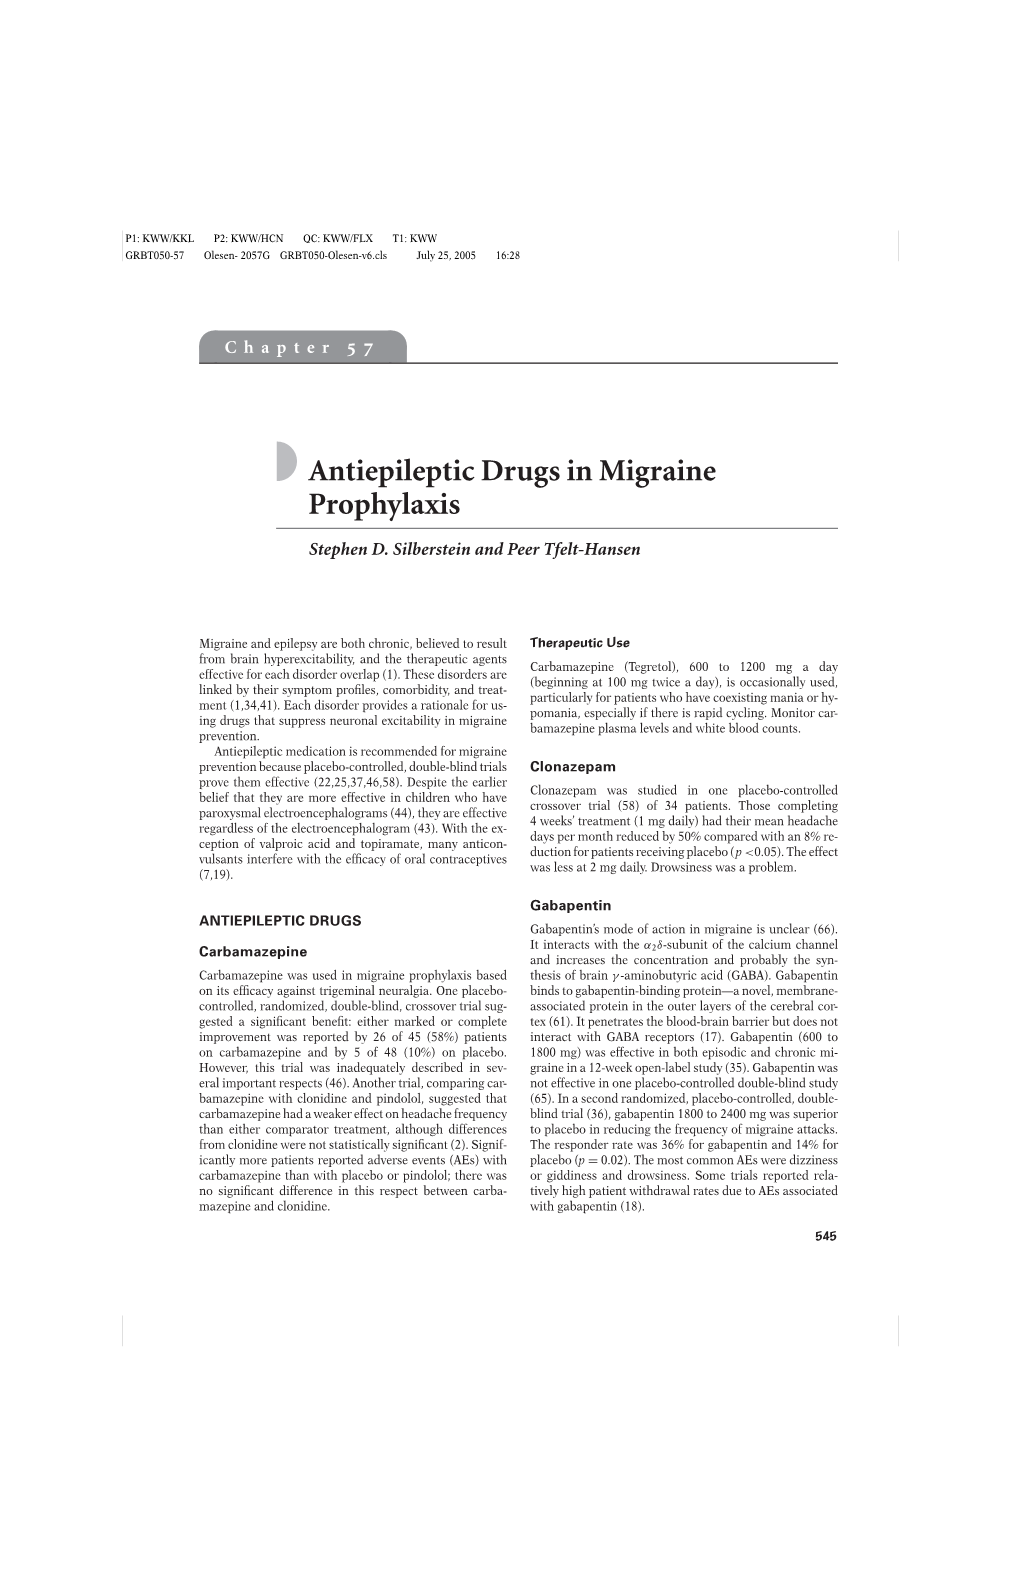 Antiepileptic Drugs in Migraine Prophylaxis